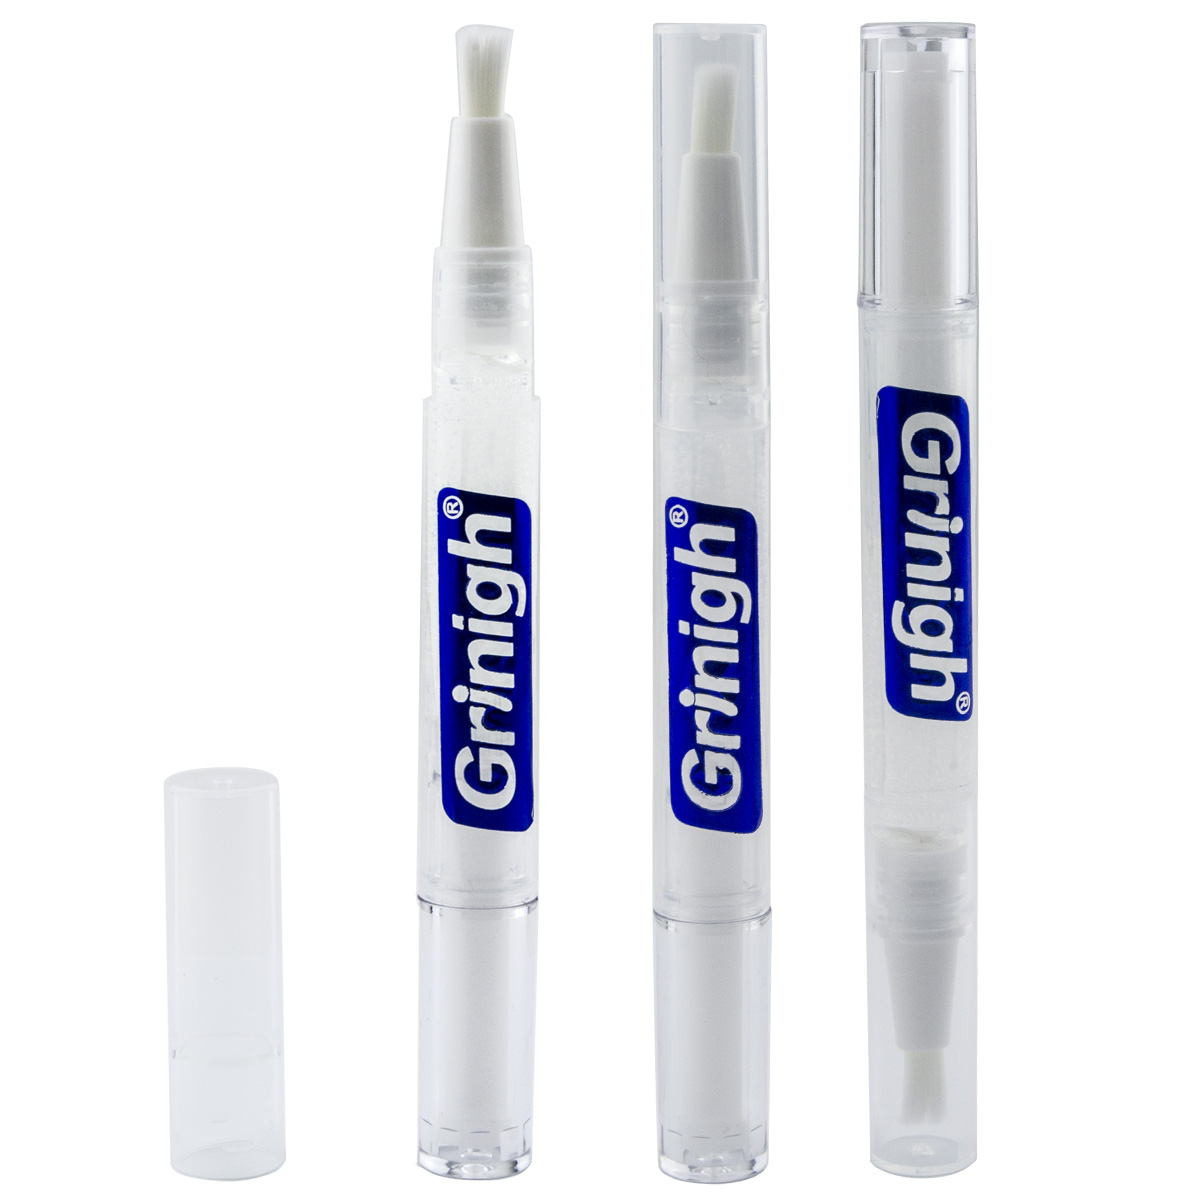 Grin365 정확한 화이트 치아 화이트닝 어플리케이터 펜 천연 성분으로 - 3 카운트 - 집중 강도 젤 (6% 과산화수소)